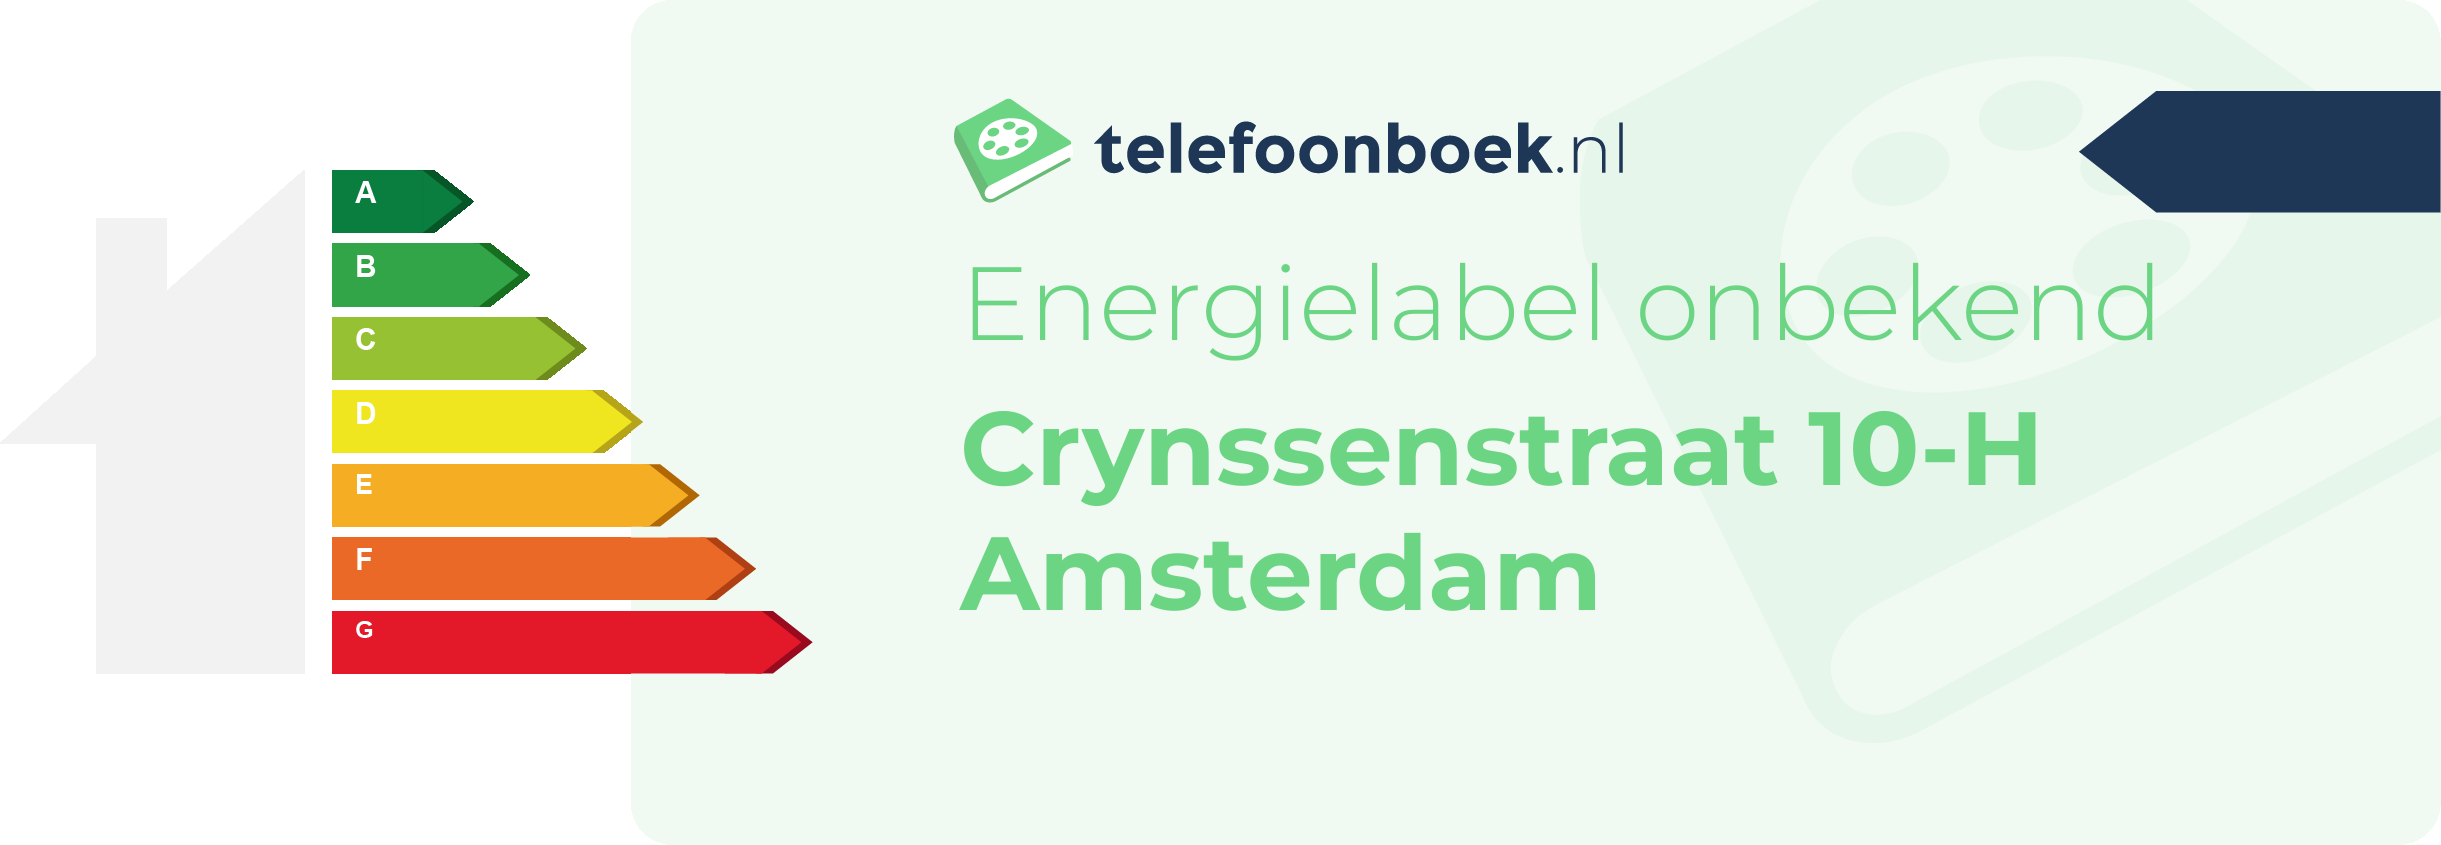 Energielabel Crynssenstraat 10-H Amsterdam